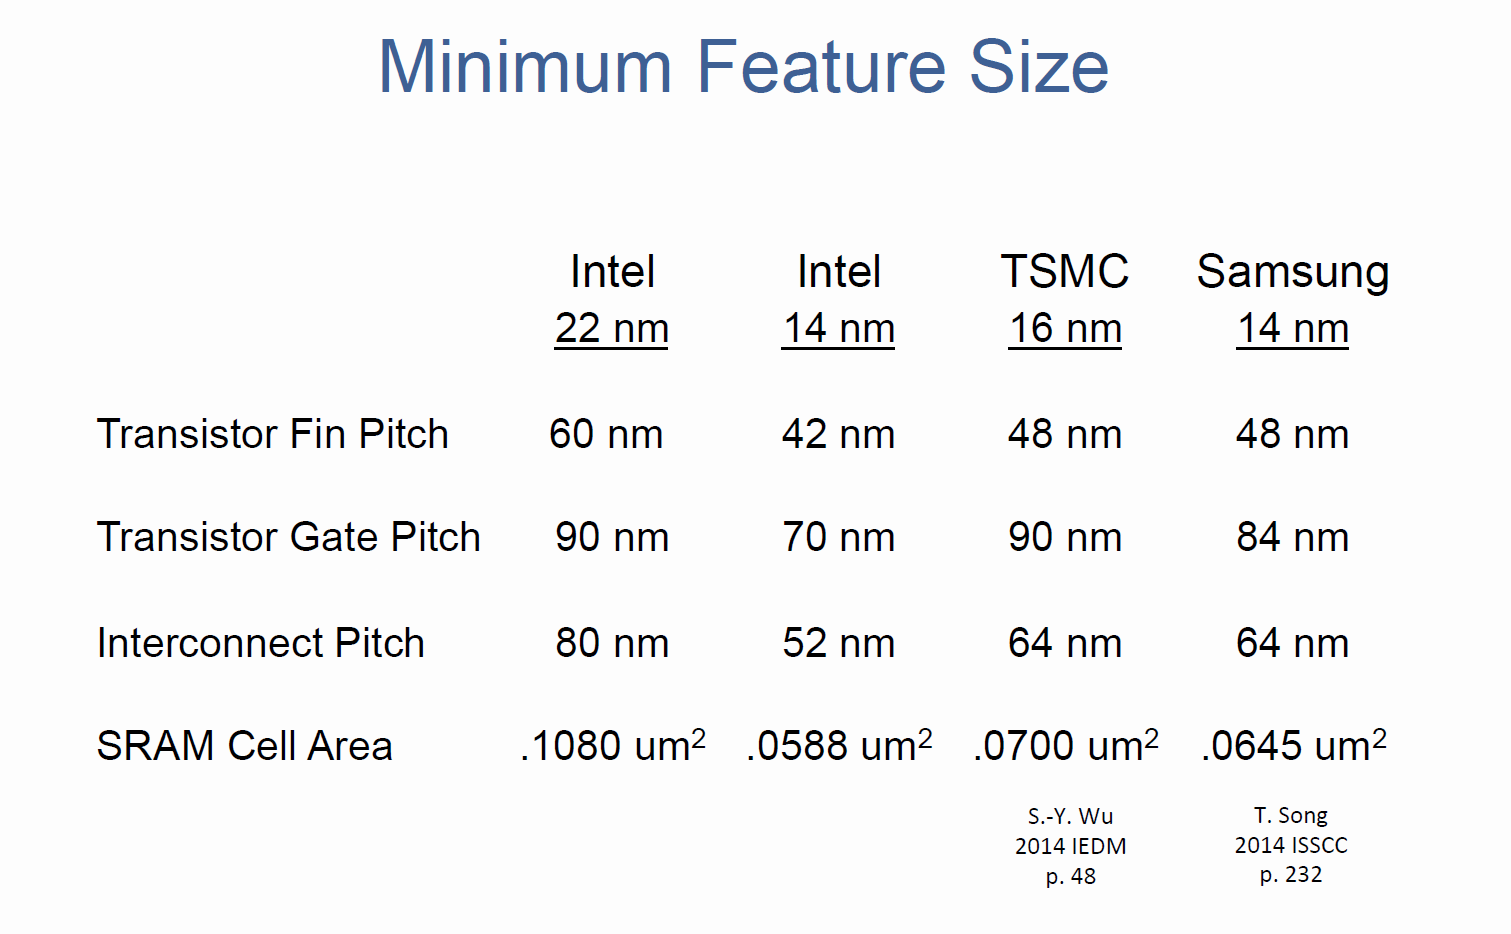 14-nm-Vergleich von Intel, TSMC und Samsung